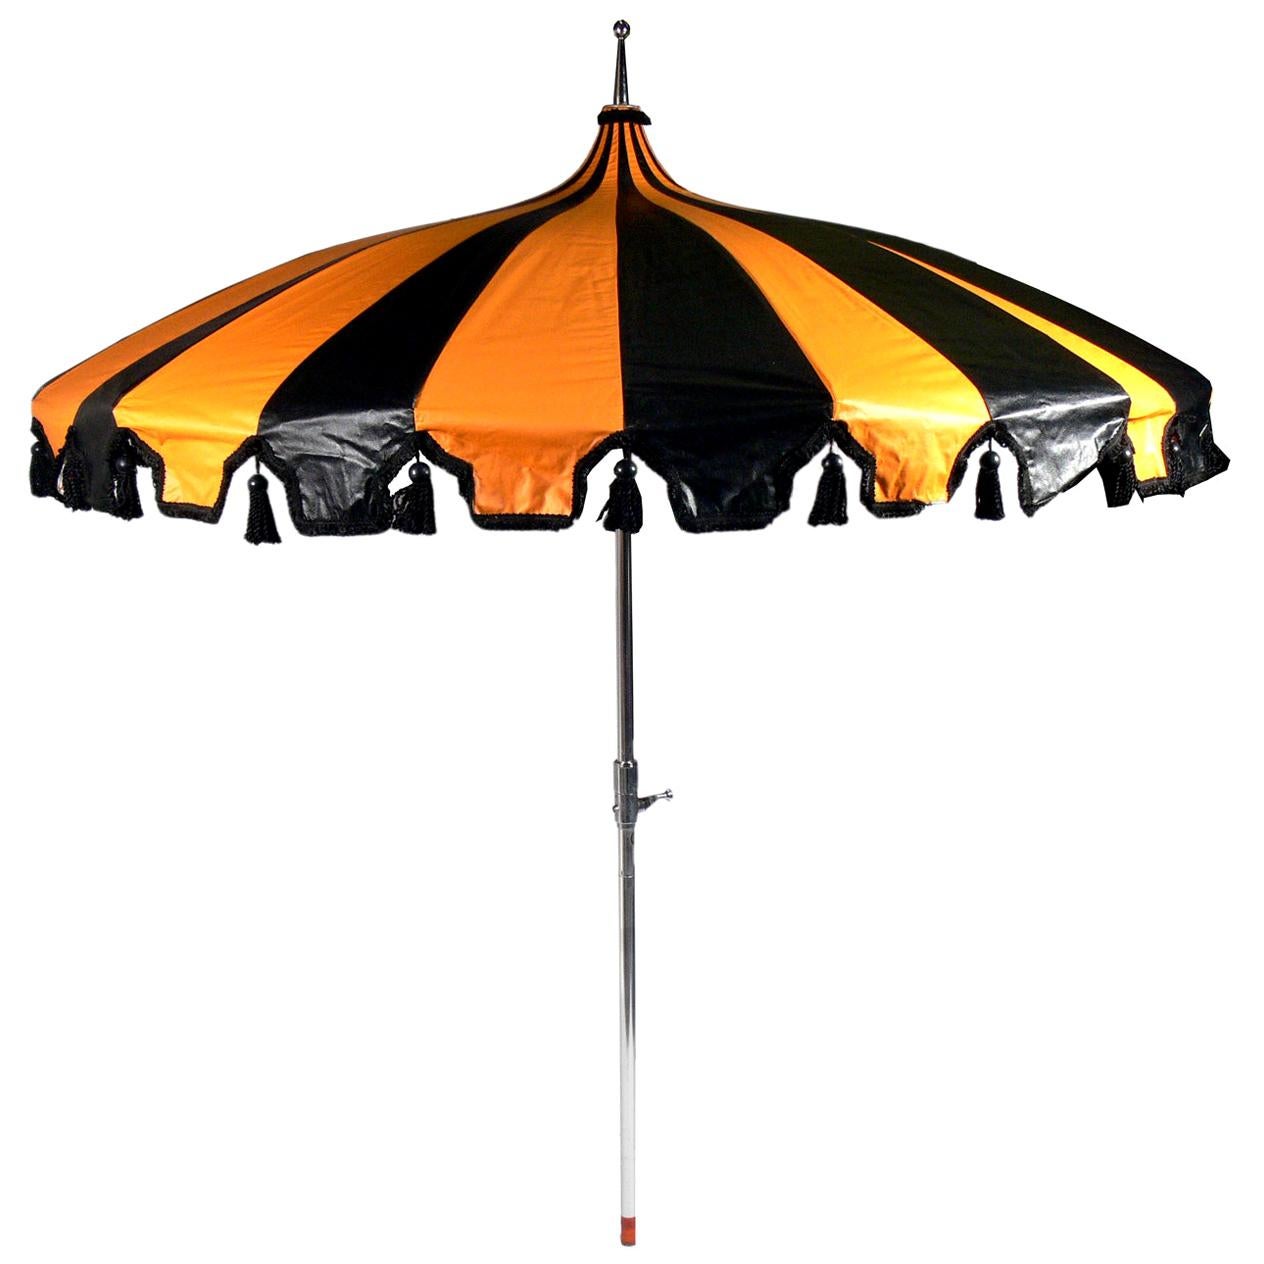 Incredible Midcentury Patio Umbrella